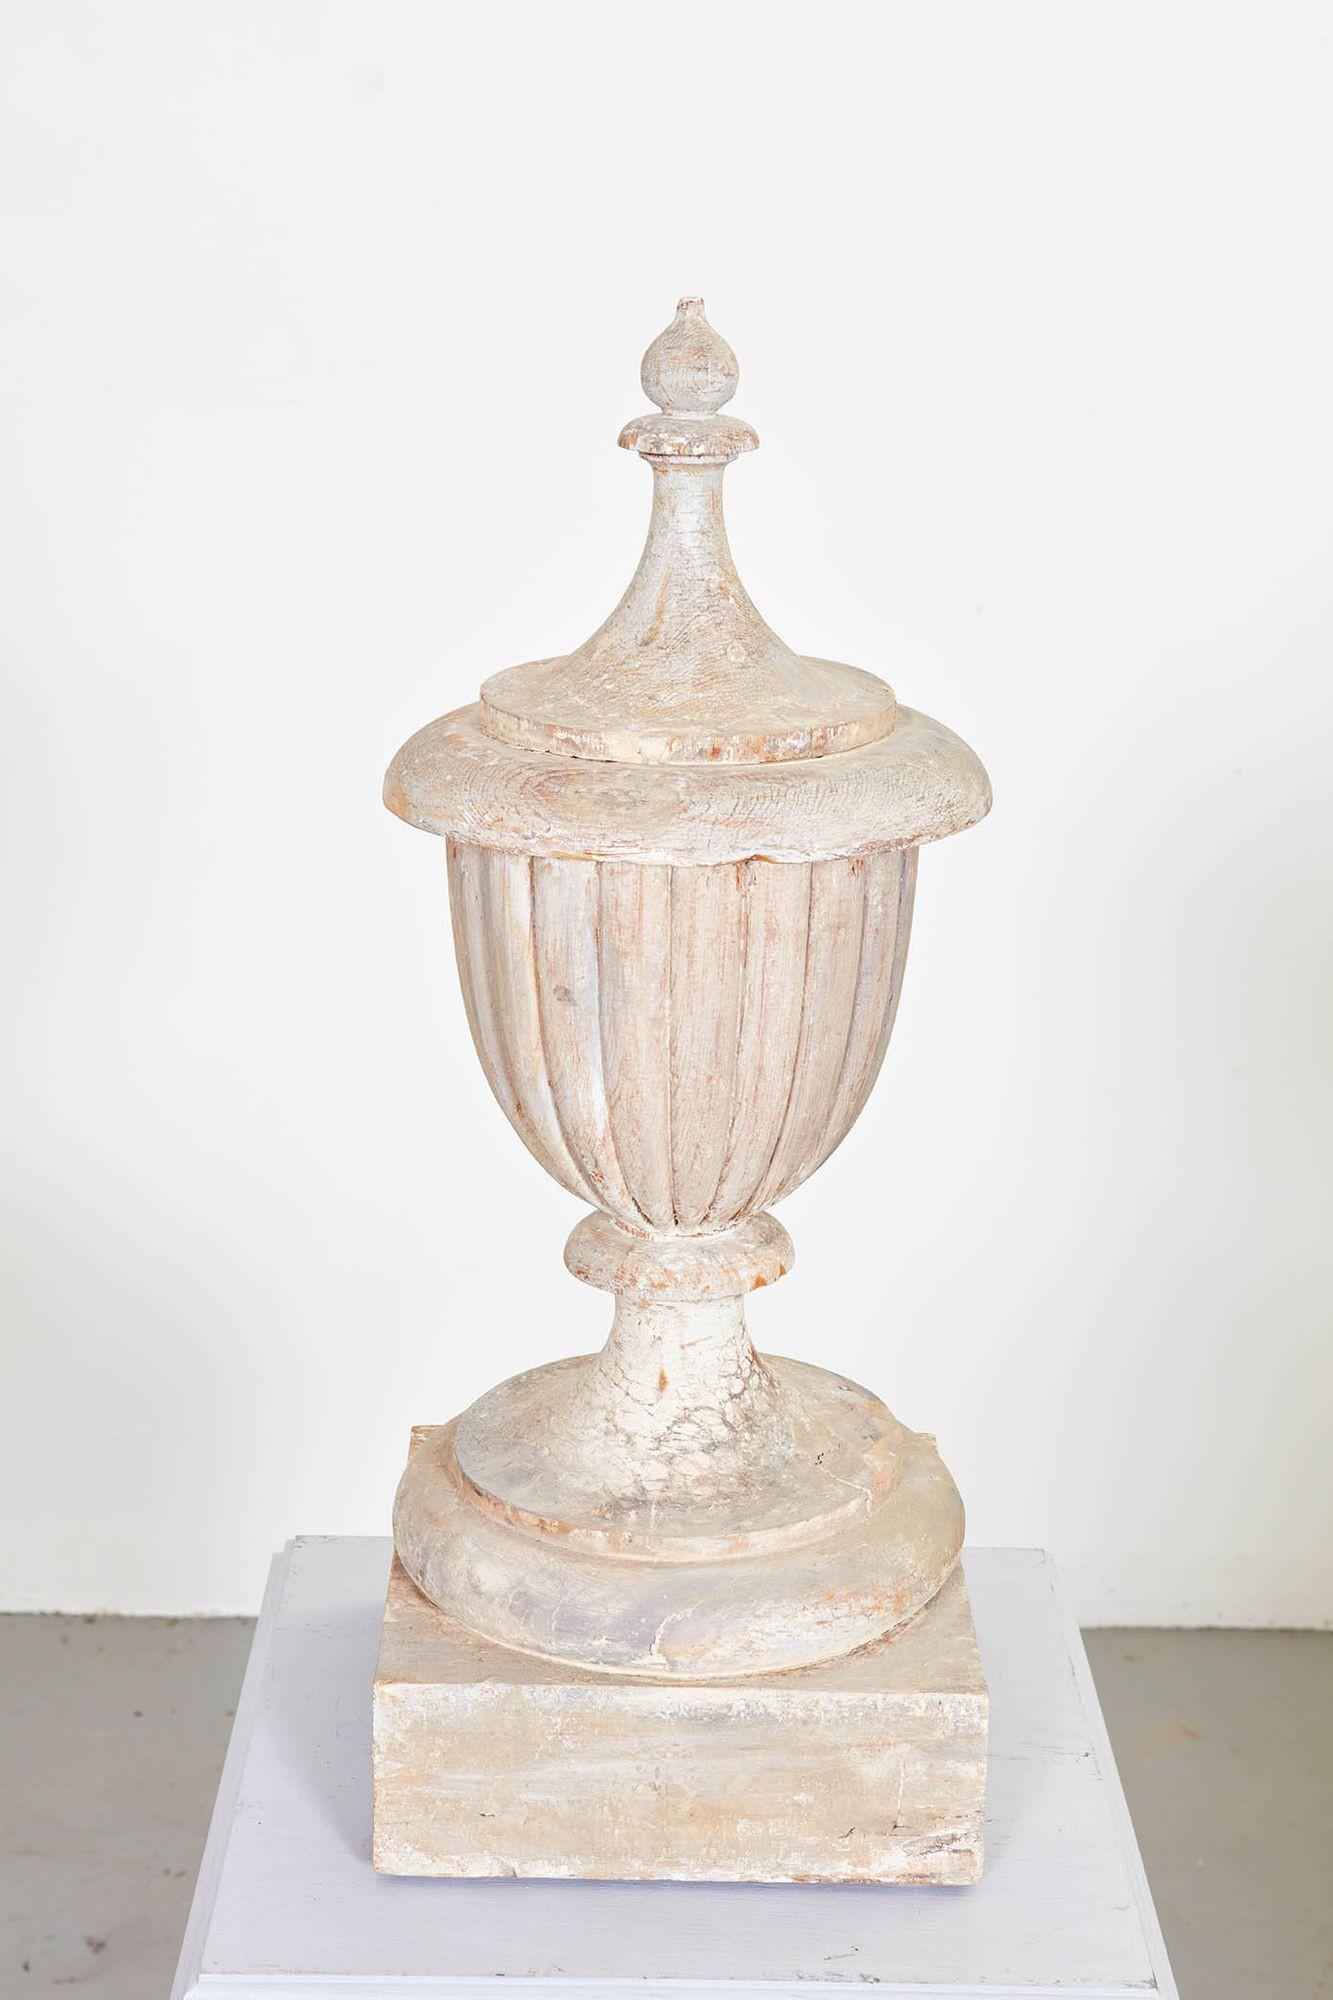 Eine geschnitzte und bemalte klassische Urne aus dem 19. Jahrhundert mit gelapptem Korpus auf einem Sockel mit gedrechseltem CAP und Endstück, die eine herrliche Patina aufweist. Jetzt auf neuem Holzsockel mit getäfelten Seiten und geformtem Ober-